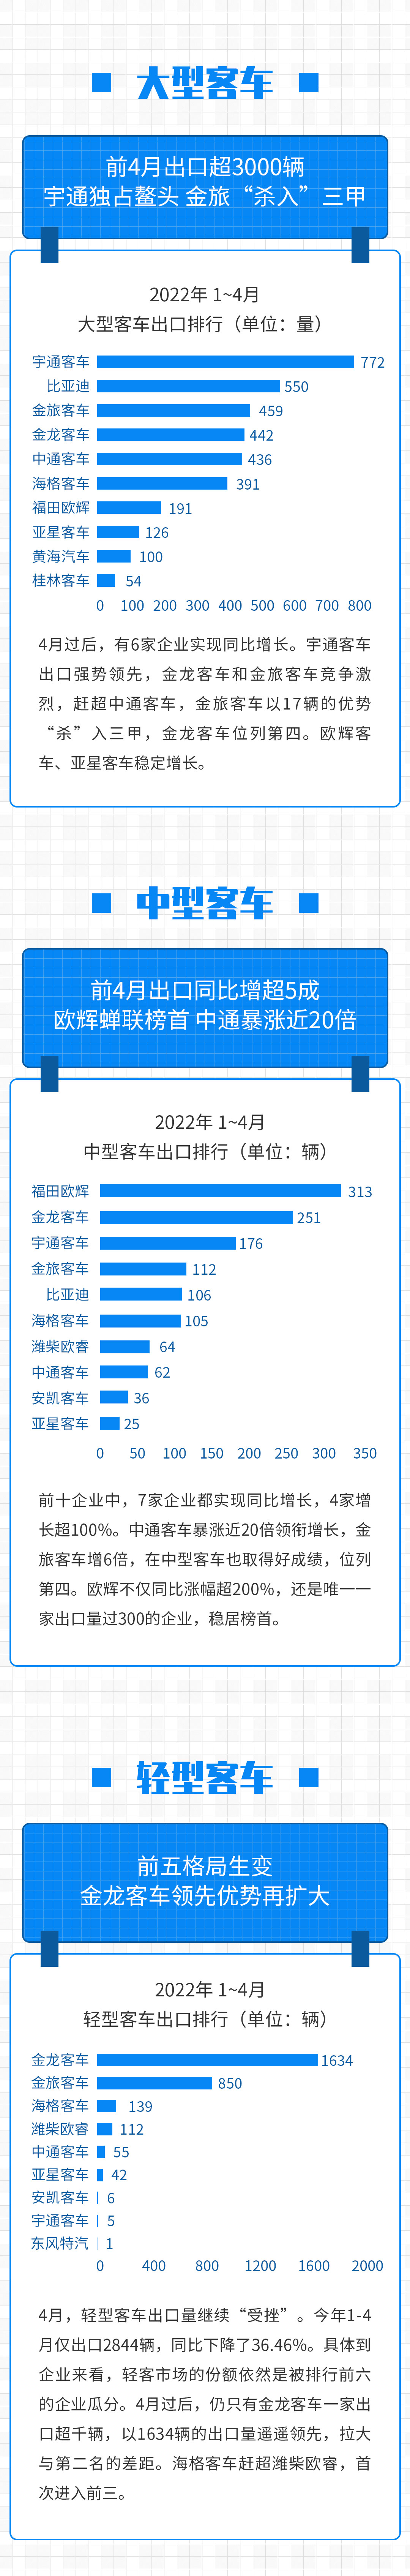 【第一商用车网 原创】据中国客车统计信息网数据，从各家企业上报的情况来看，今年1-4月，我国实现出口客车7702辆，同比下降5.62%。其中，大型客车出口3593辆，同比增长26.07%；中型客车出口1265辆，同比增长51.5%；轻型客车出口1386辆，同比下降19.14%。